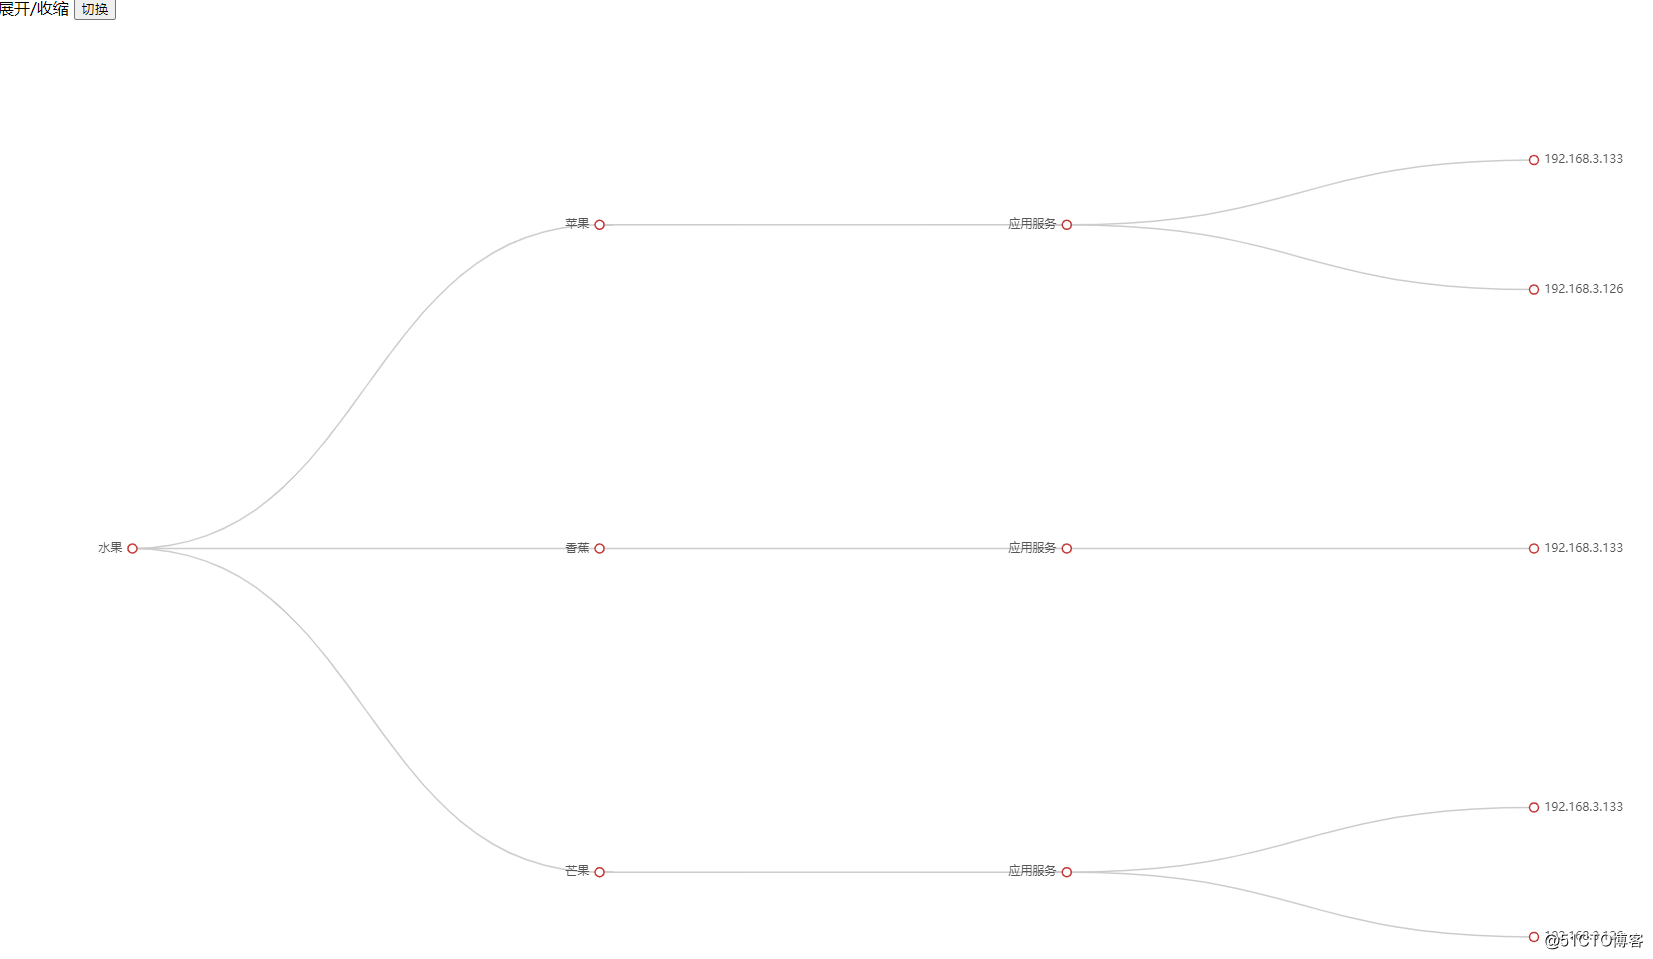 El diagrama de árbol de Echarts se expande y contrae